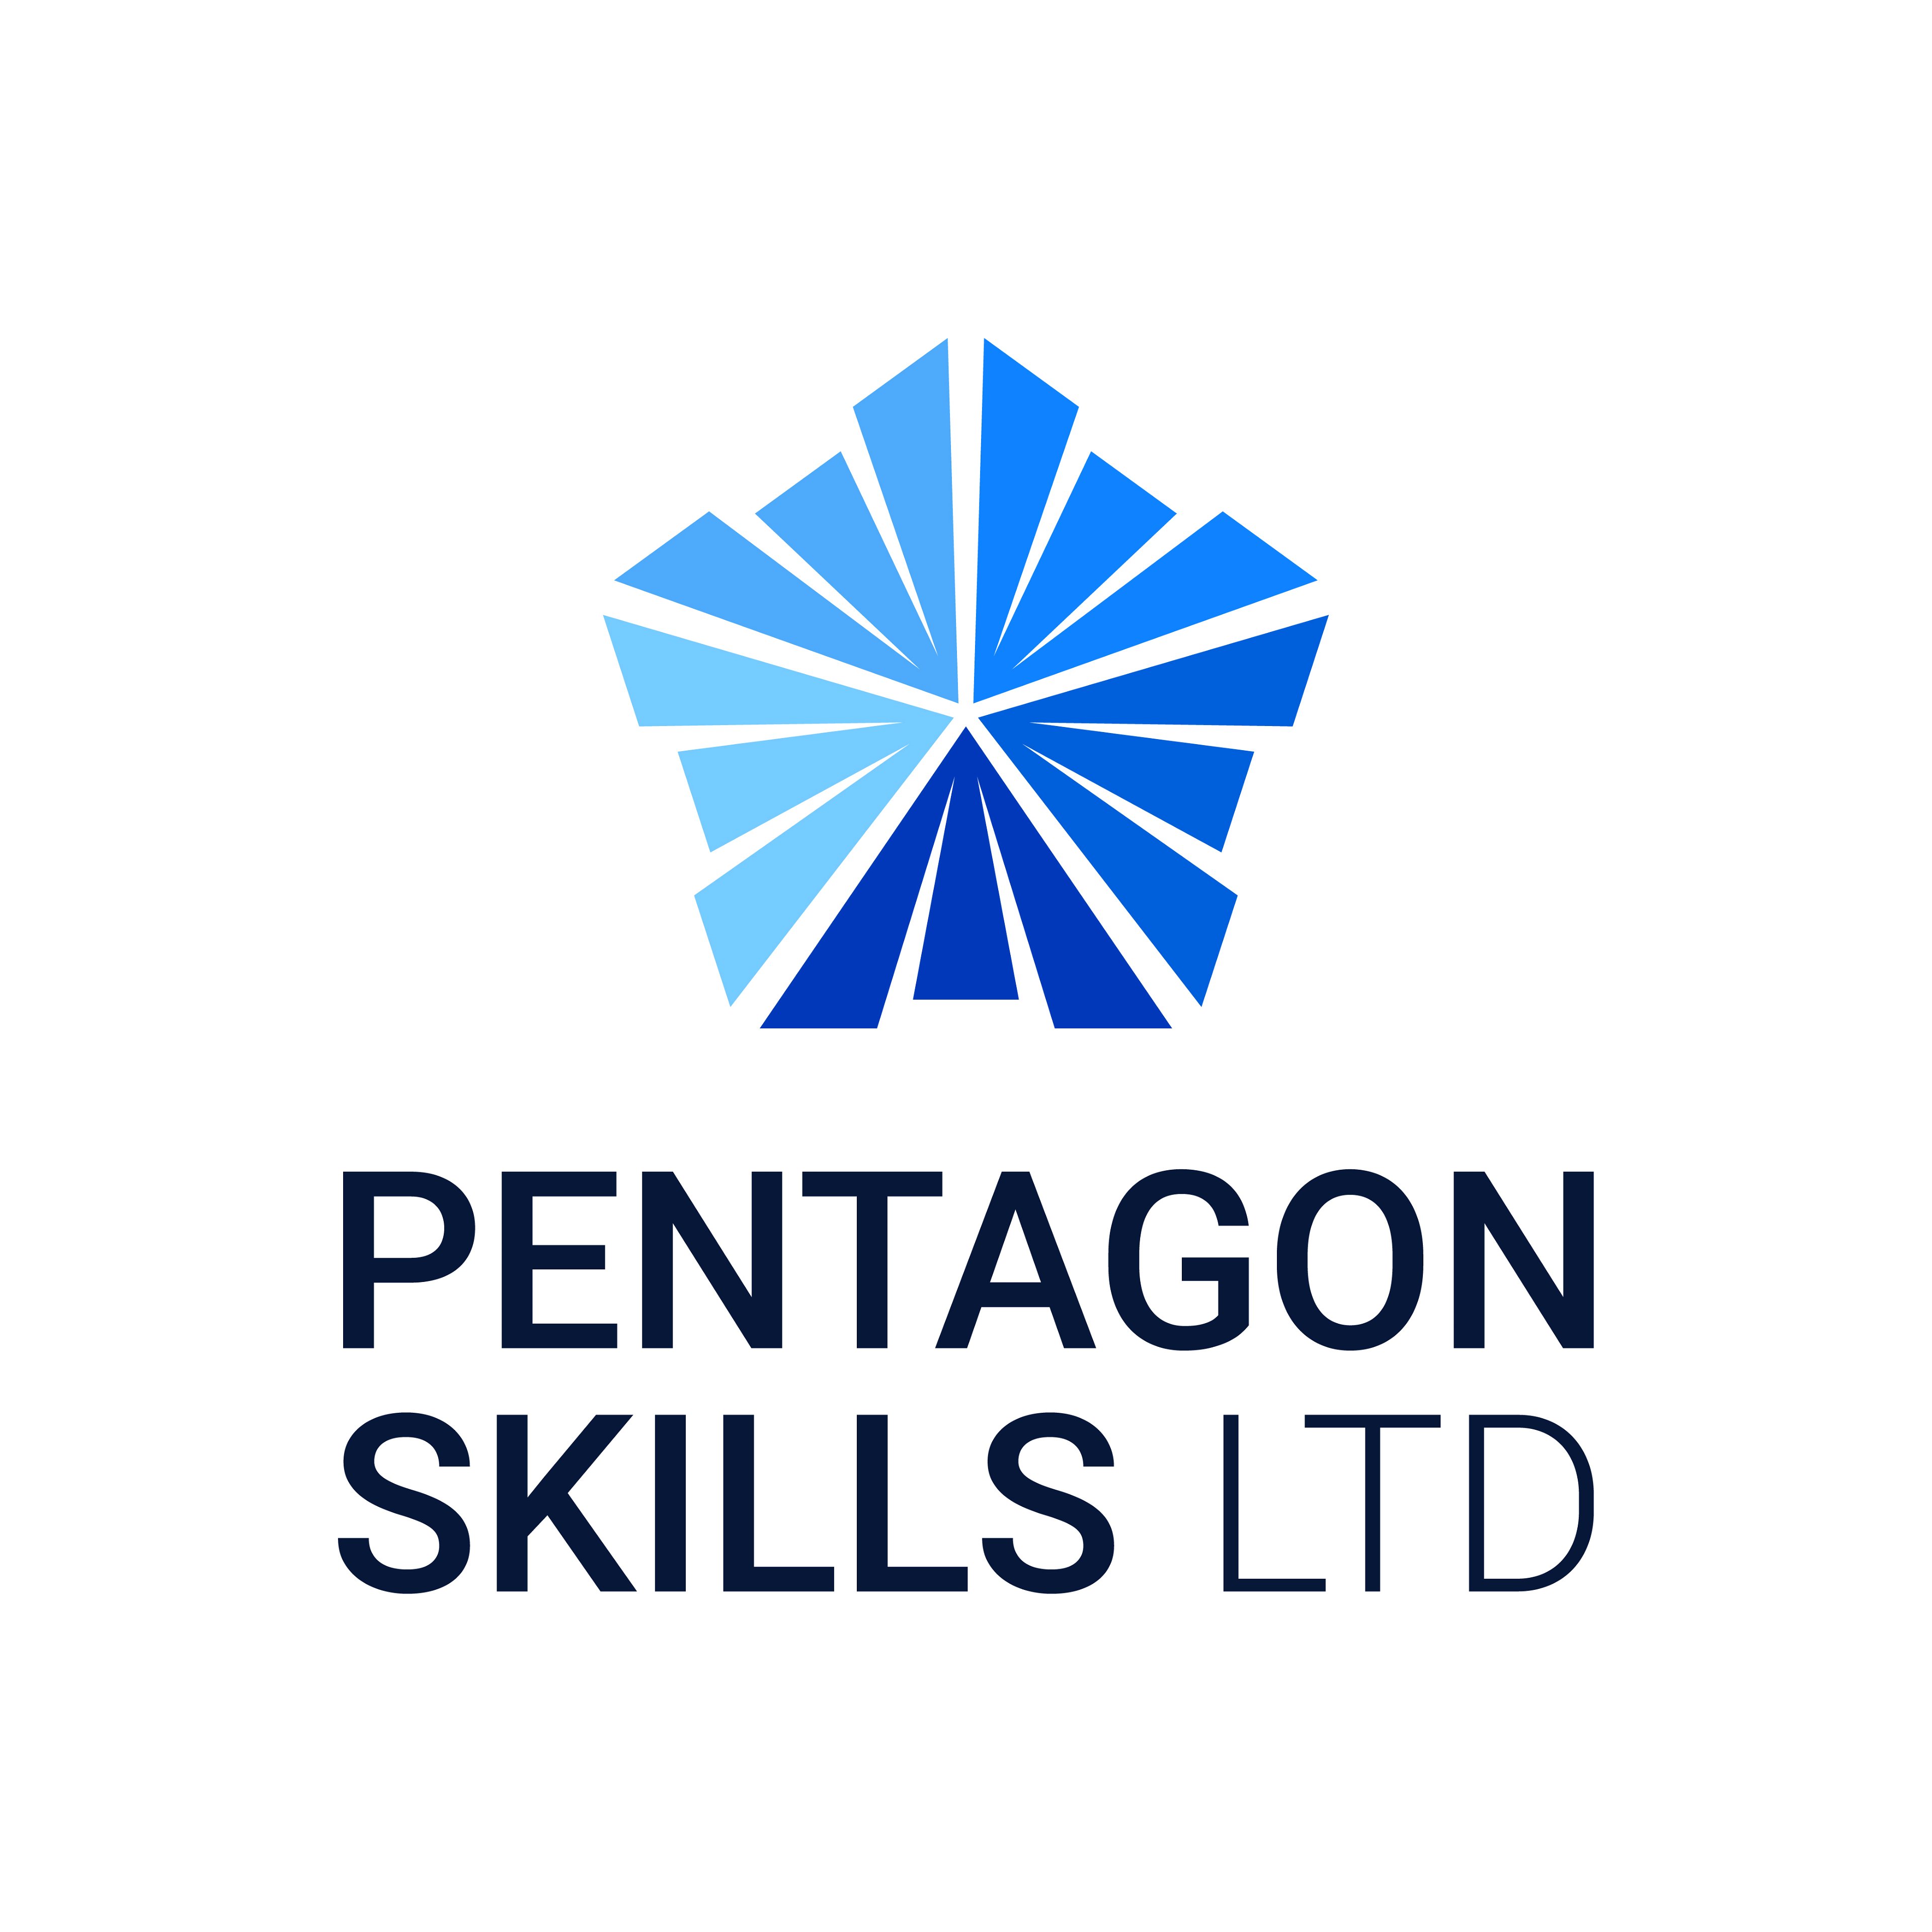 Pentagon Skills Ltd